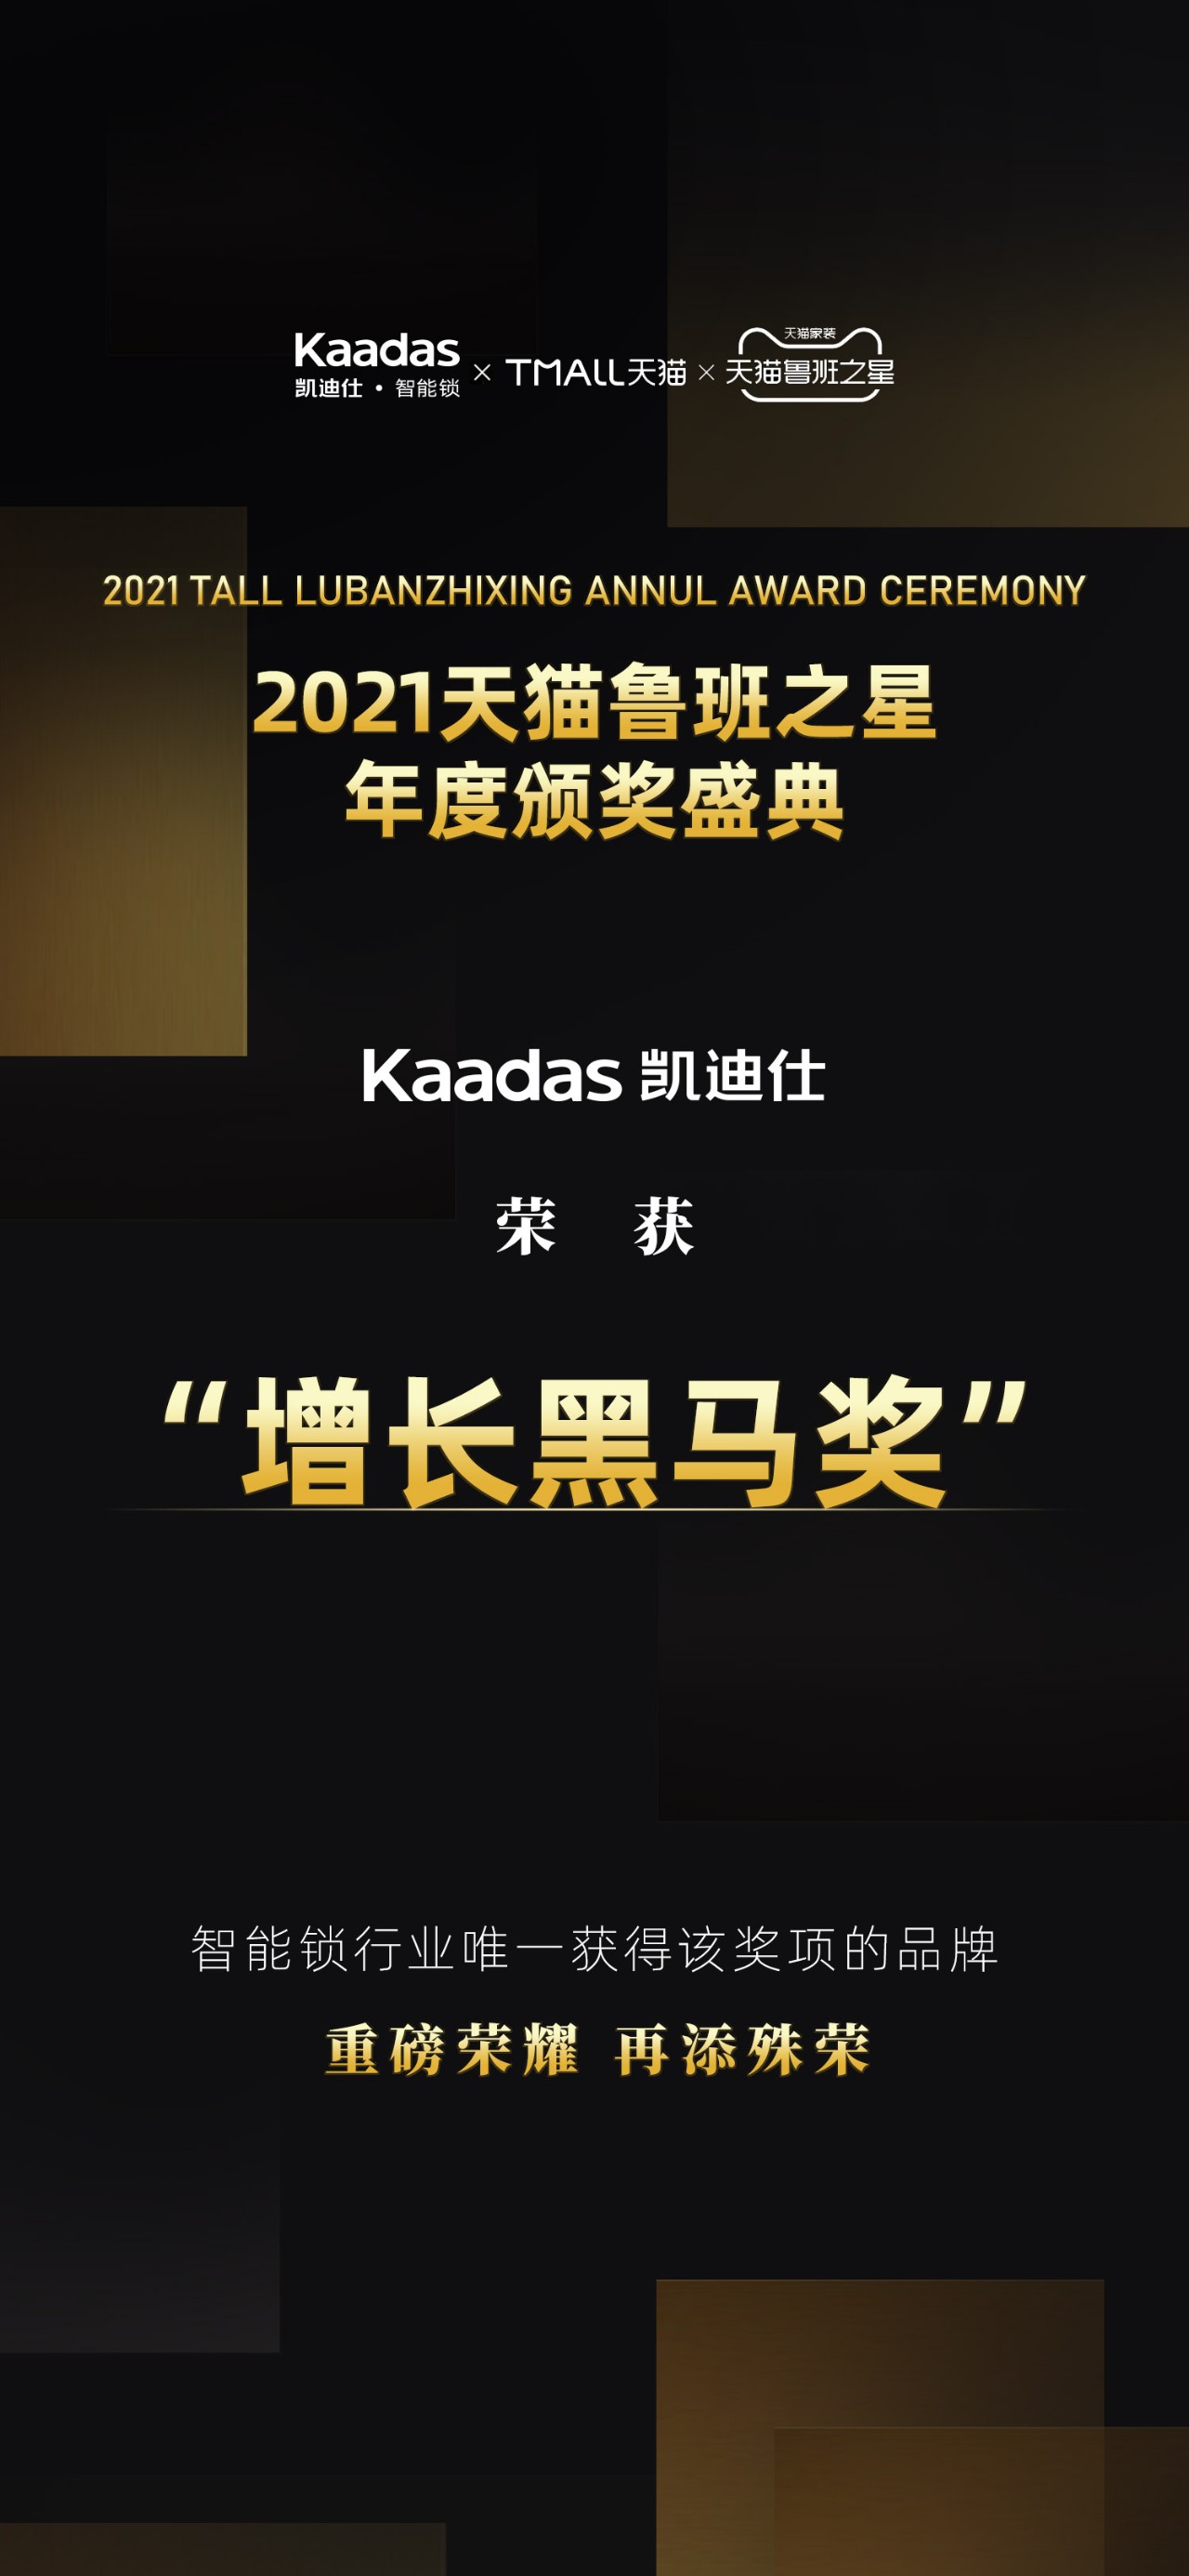 Kaadas凯迪仕荣获“2021天猫鲁班之星·增长黑马奖”